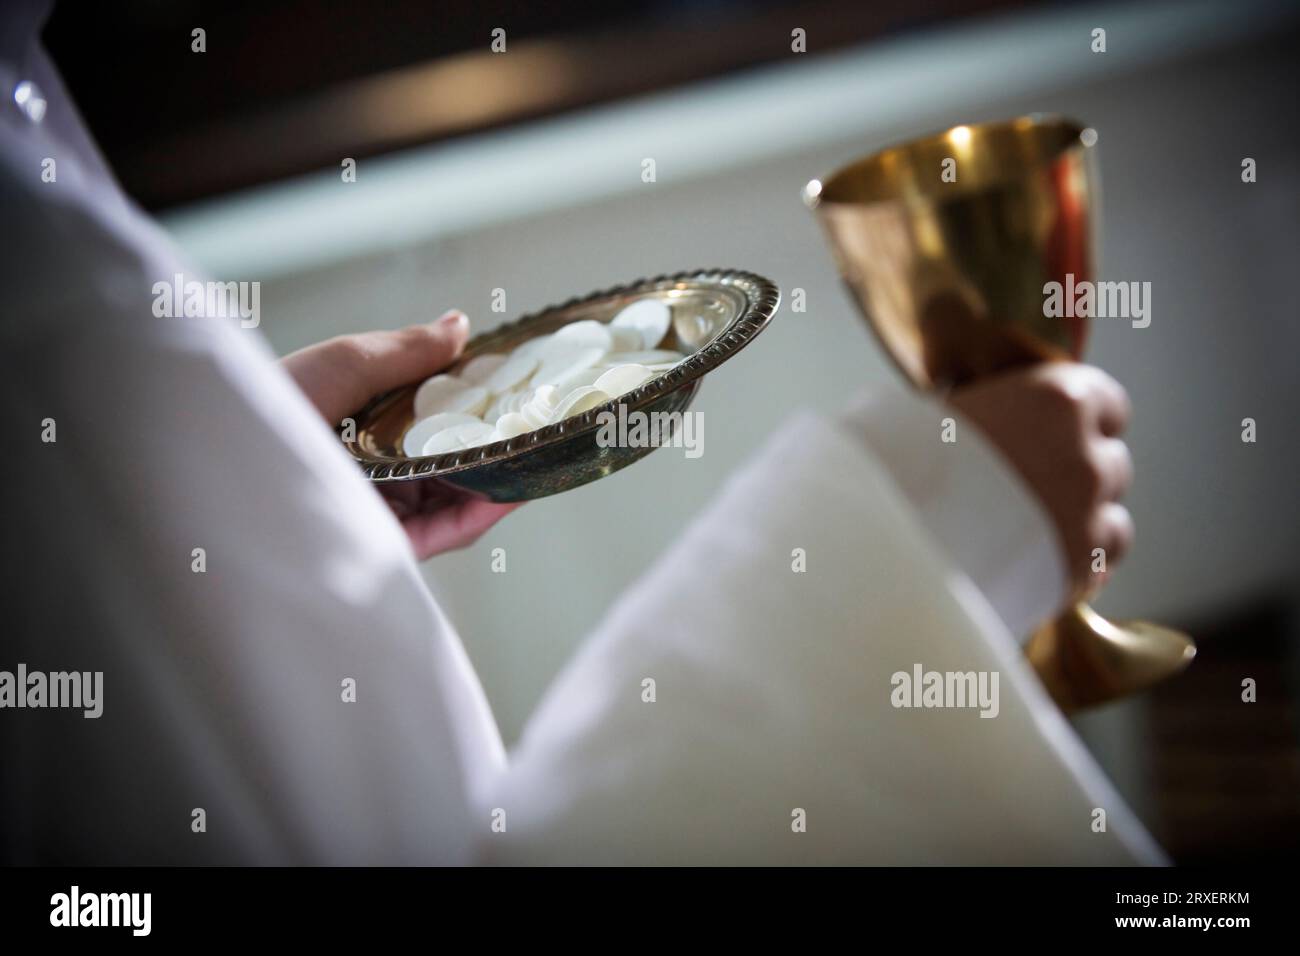 Abgeschnittene Seitenansicht einer Person, die einen Teller und einen Becher hält. Stockfoto